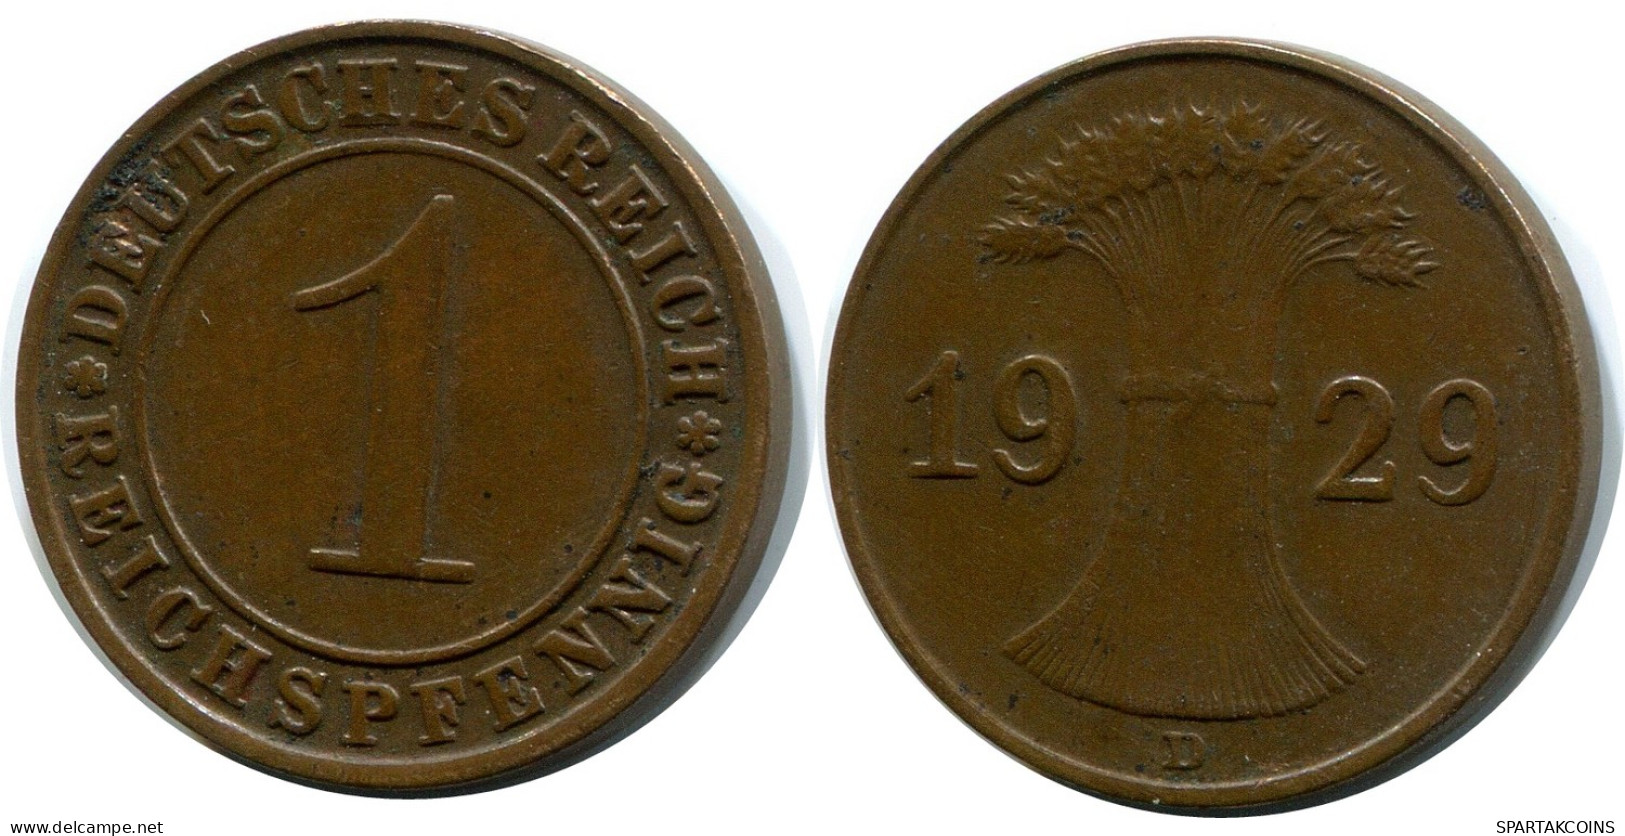 1 REICHSPFENNIG 1929 D ALEMANIA Moneda GERMANY #DB130.E - 1 Rentenpfennig & 1 Reichspfennig